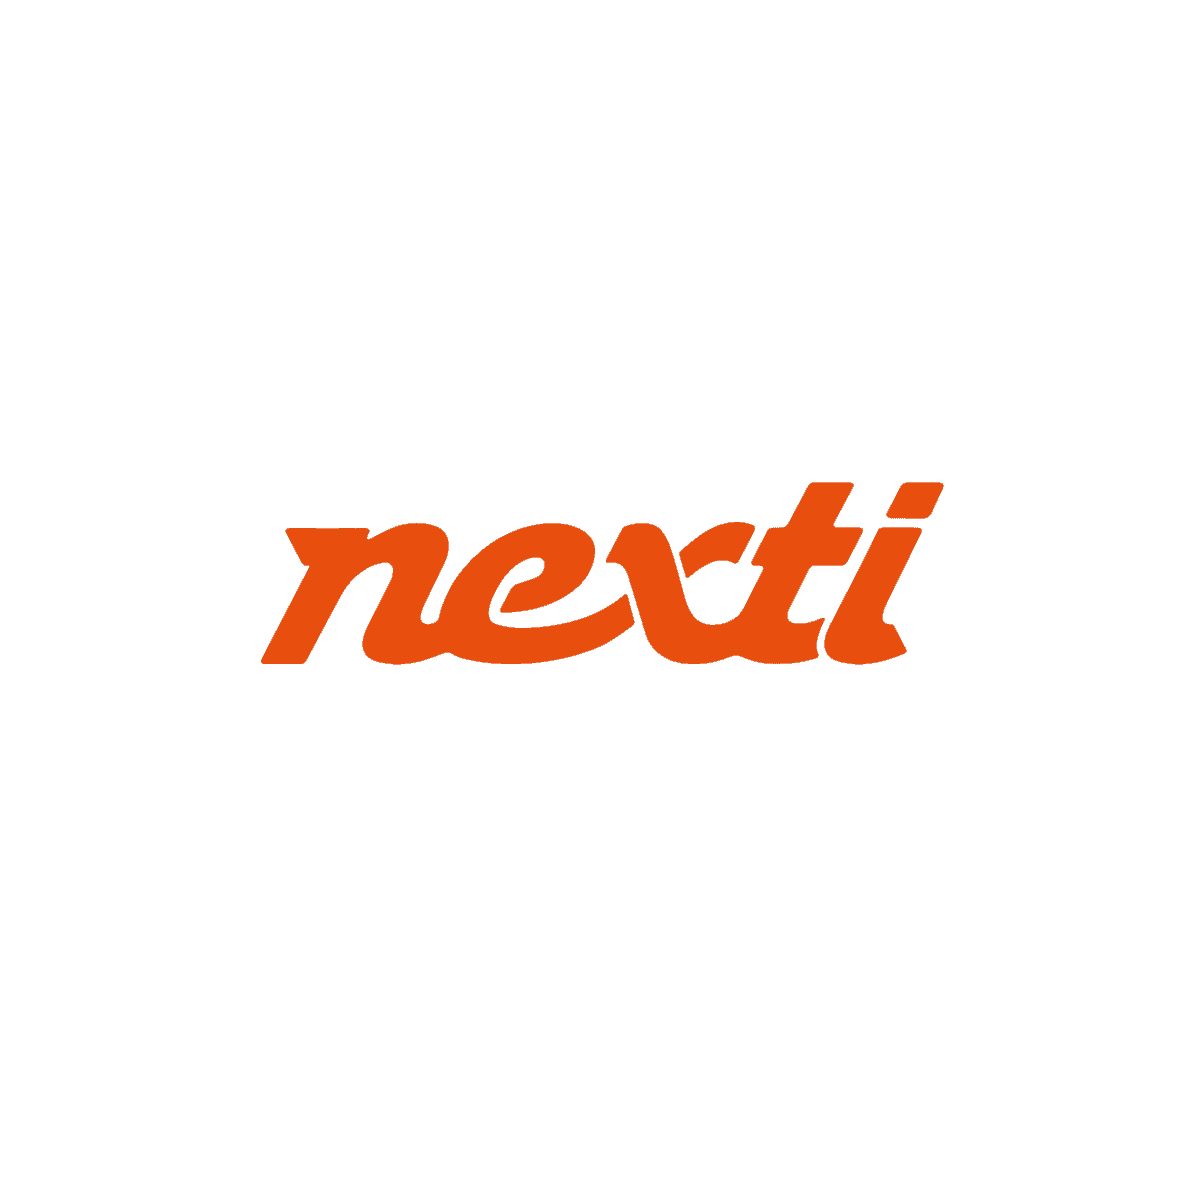 A imagem mostra a palavra “nexti” em letras minúsculas, escrita em negrito, laranja e itálico sobre fundo branco – um emblema de inserção em inovação.